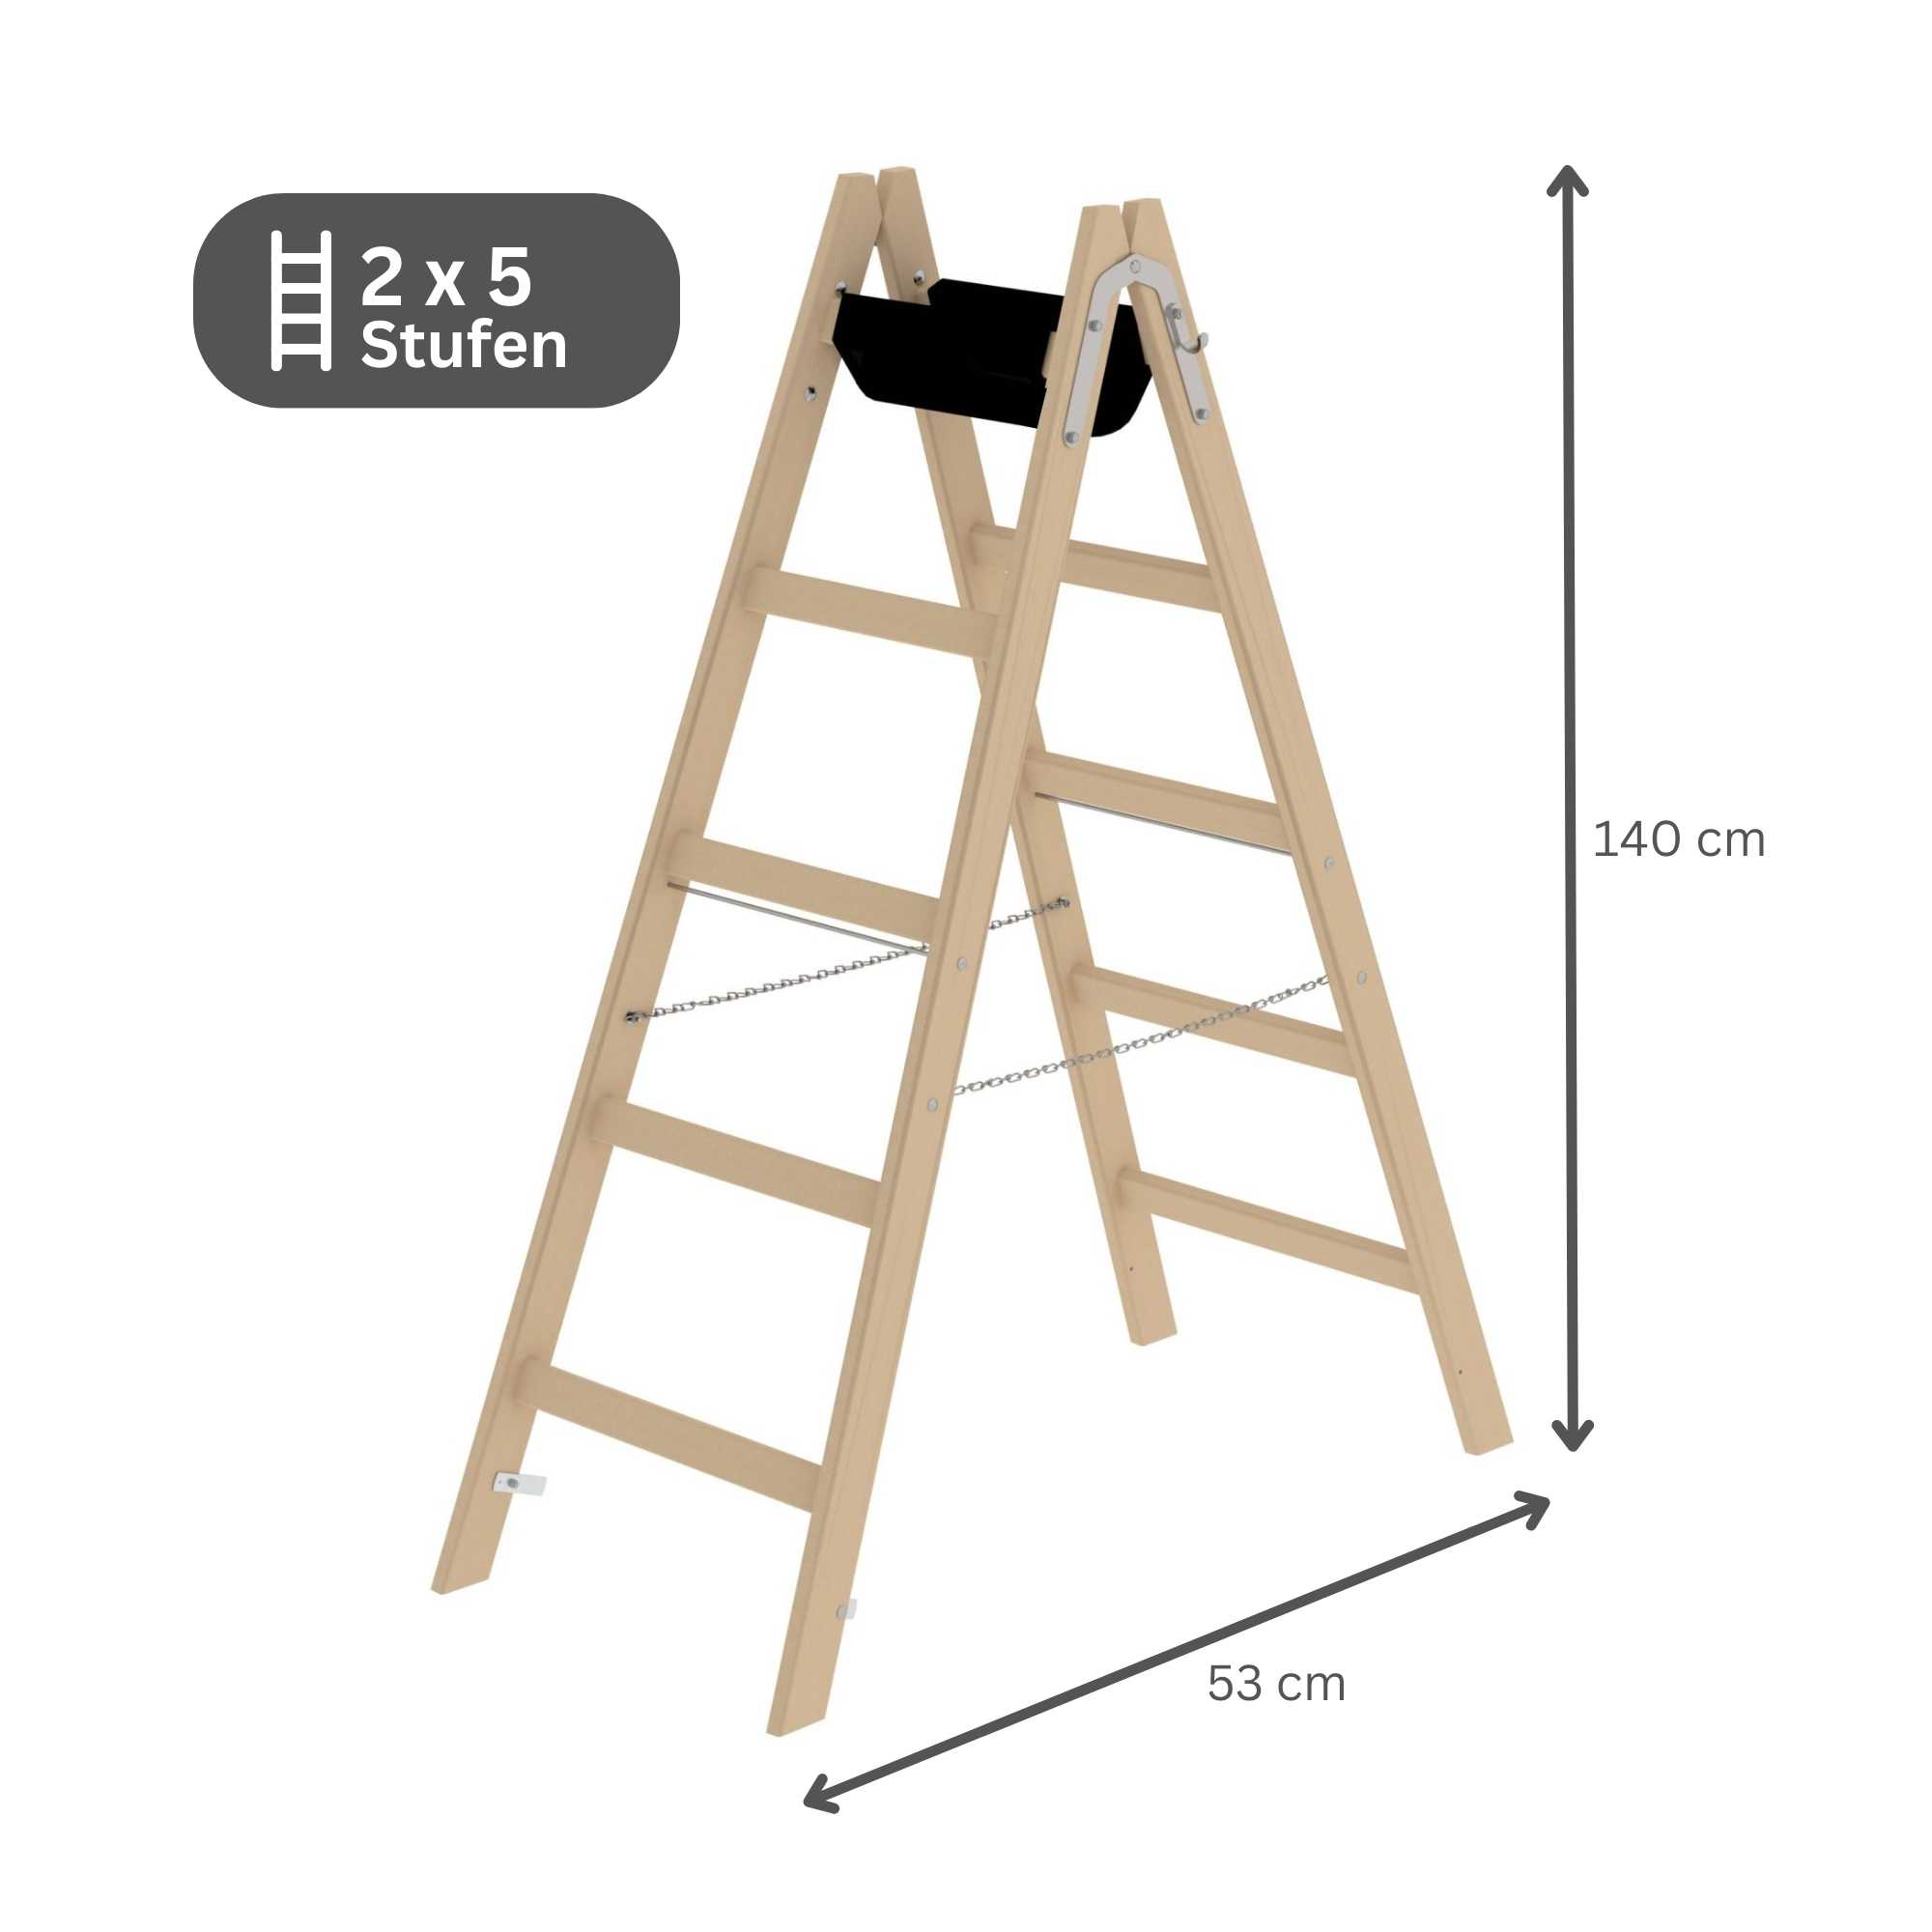 Sprossen-Stehleiter Holz 2x5 Sprossen